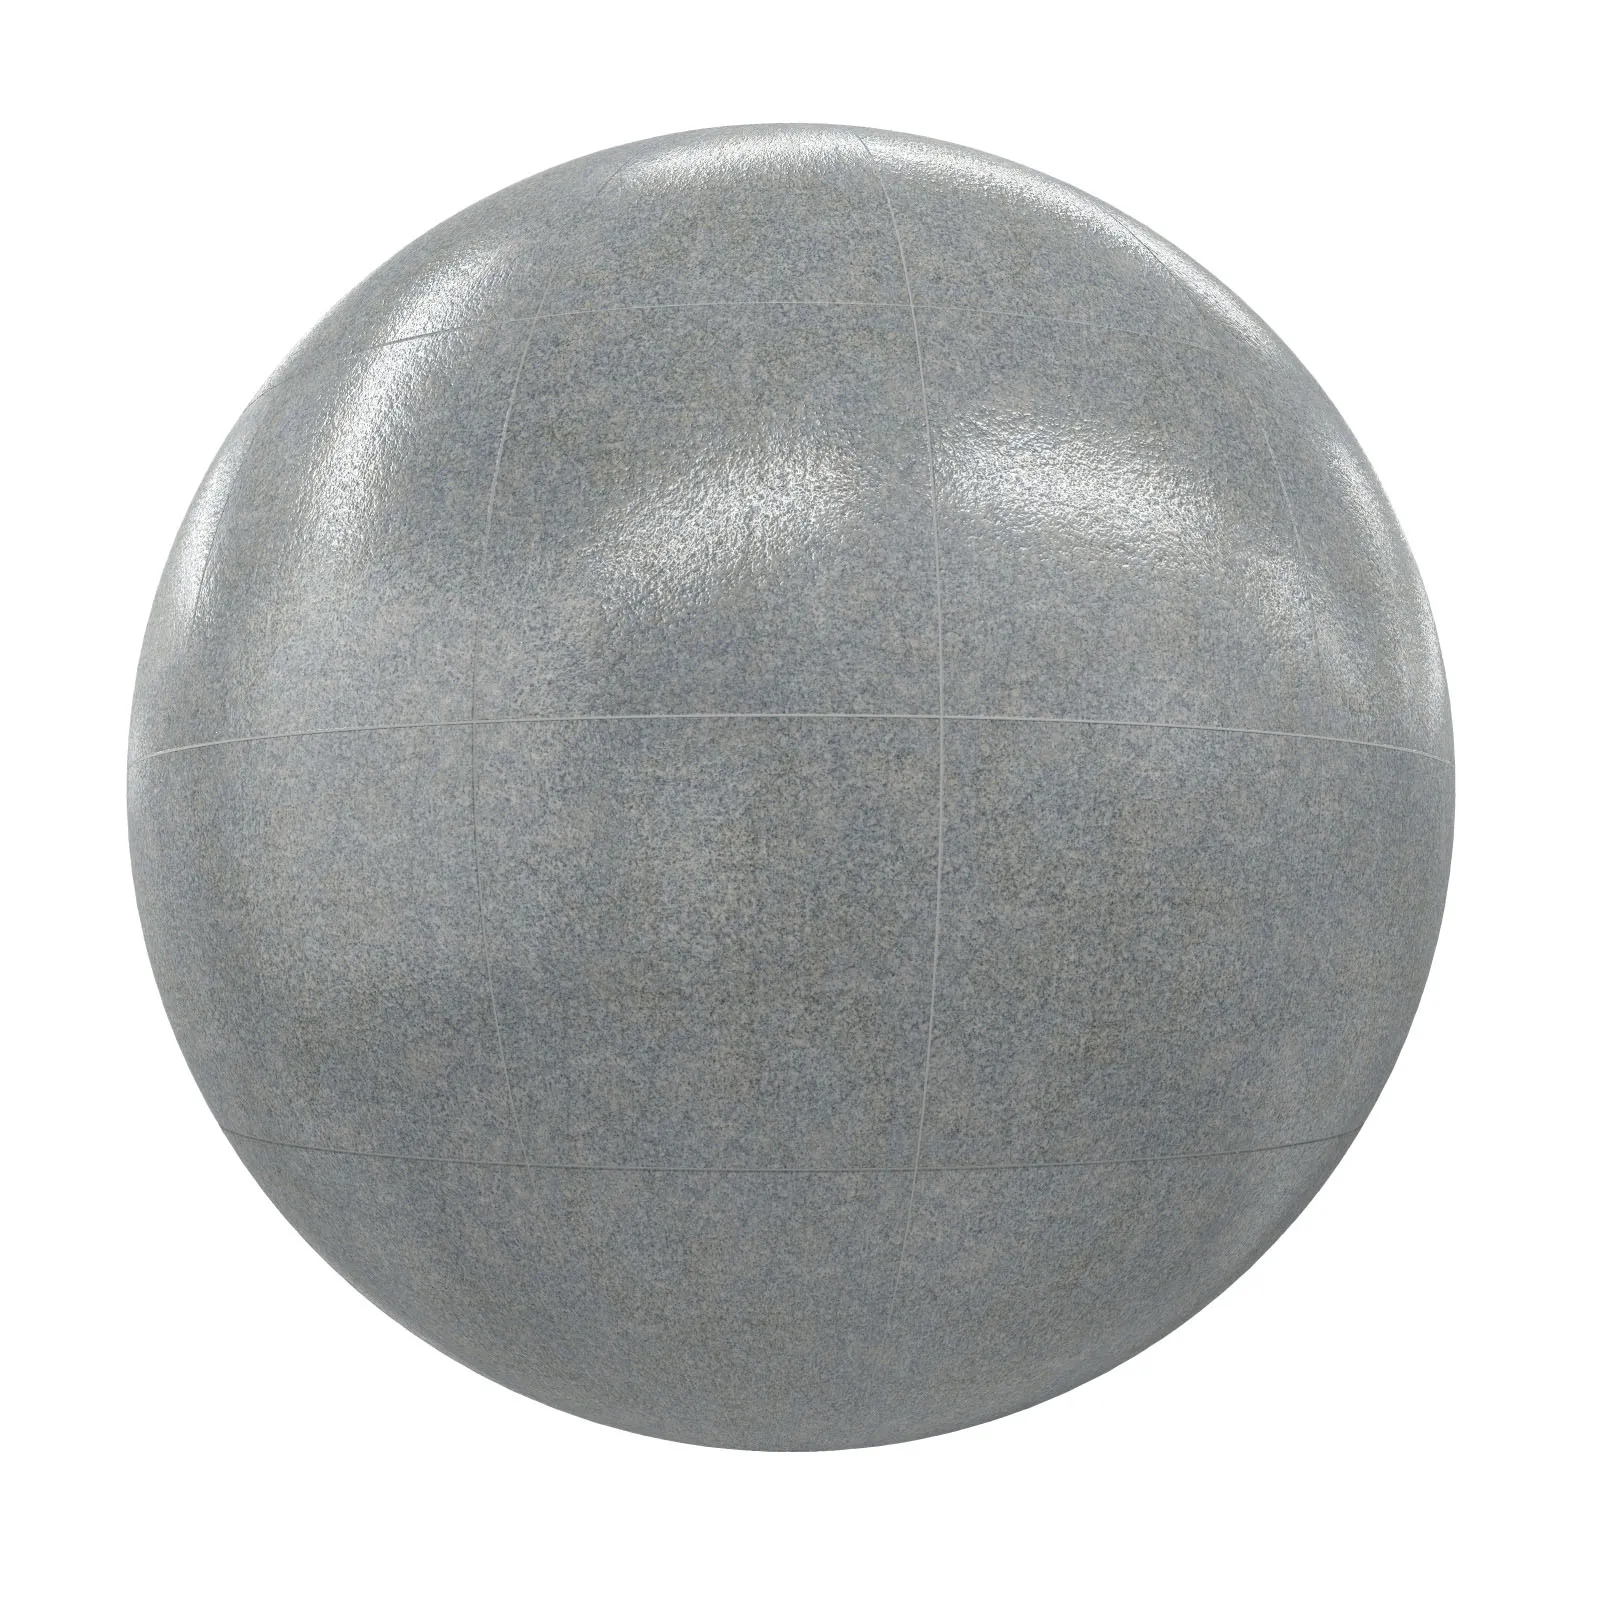 PBR CGAXIS TEXTURES – TILES – Grey Tiles 2